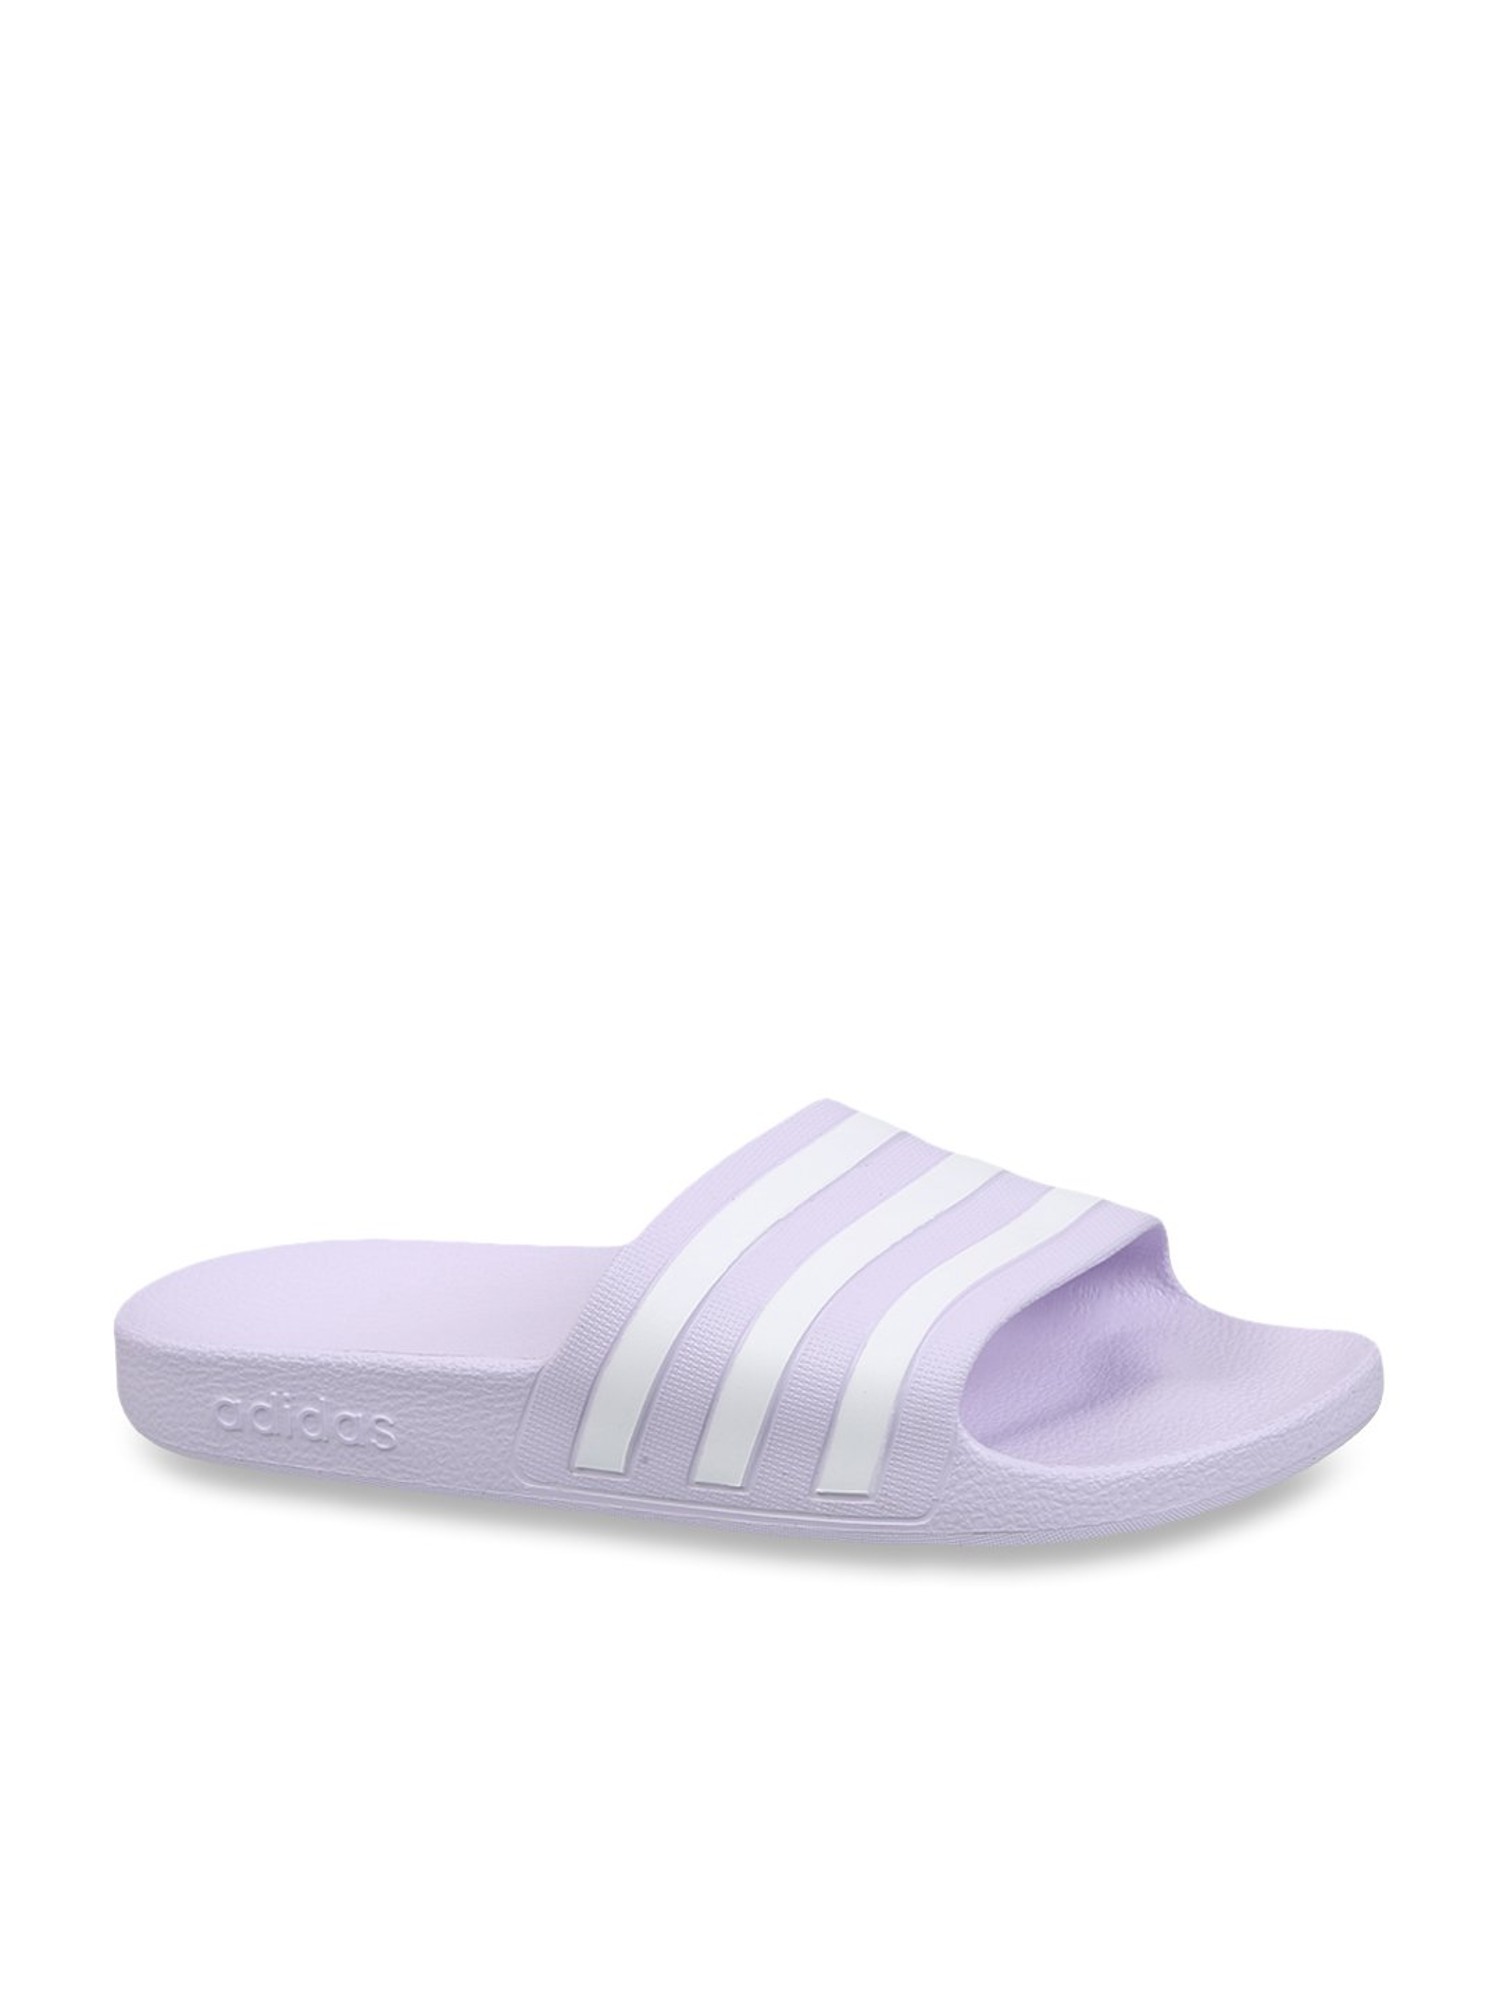 lilac adidas slides